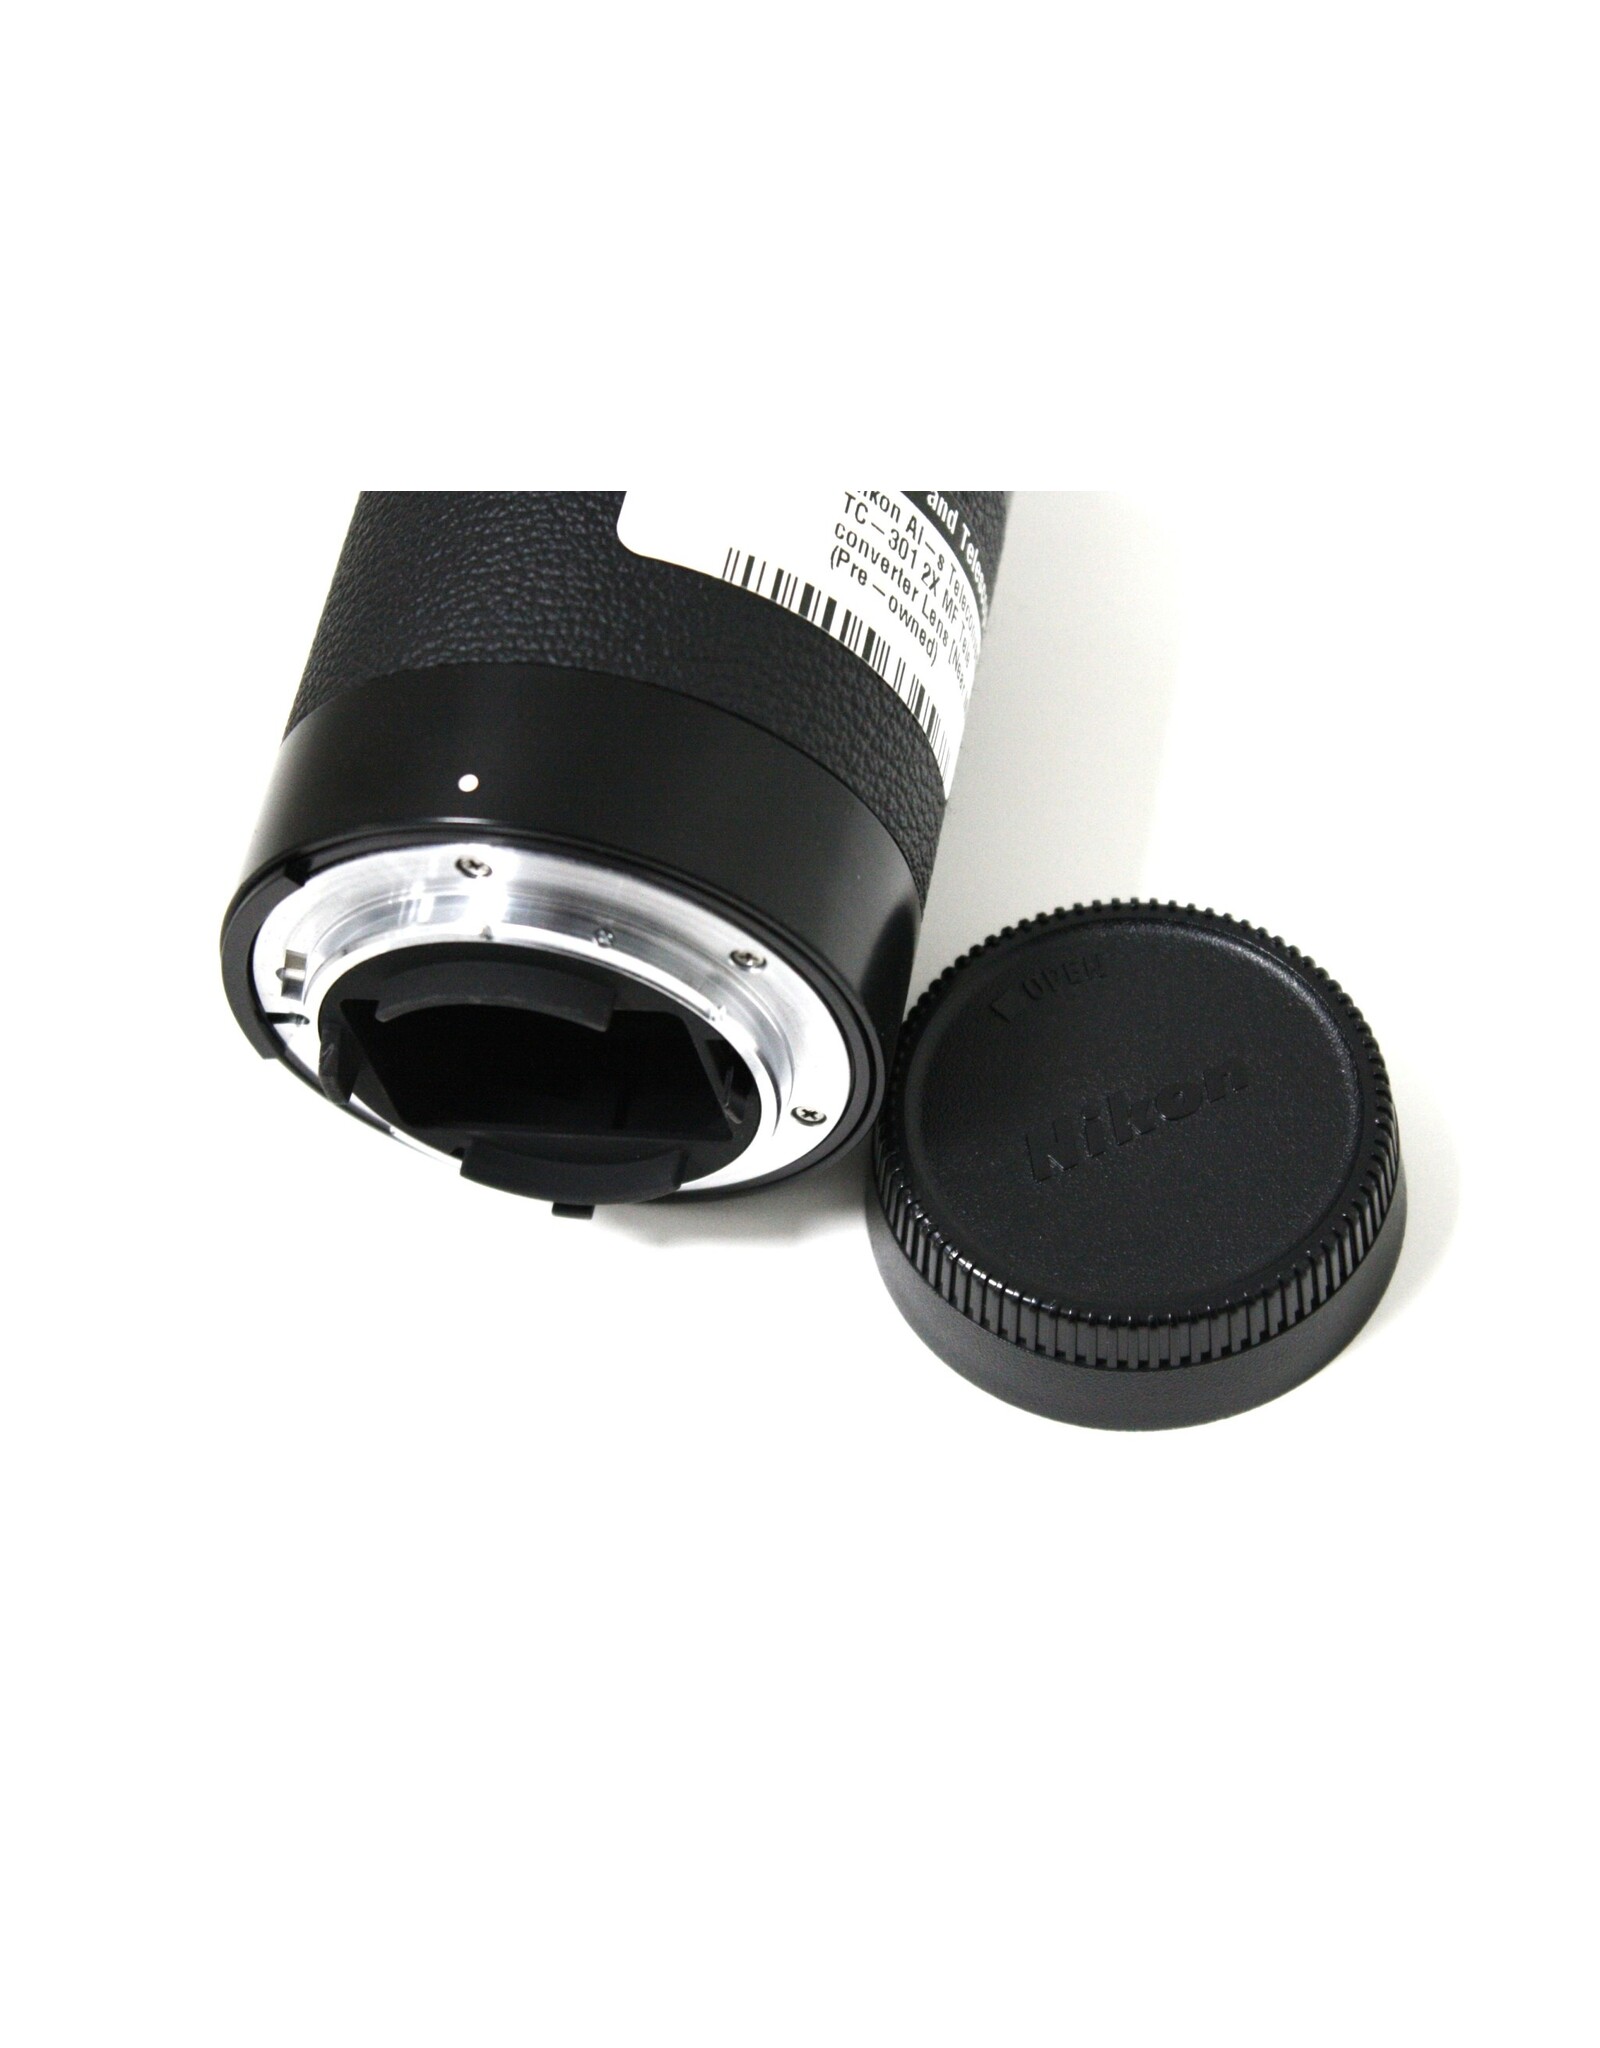 Nikon Nikon Ai-s Teleconverter TC-301 2X MF Tele converter Lens [Near MINT]  (Pre-owned)